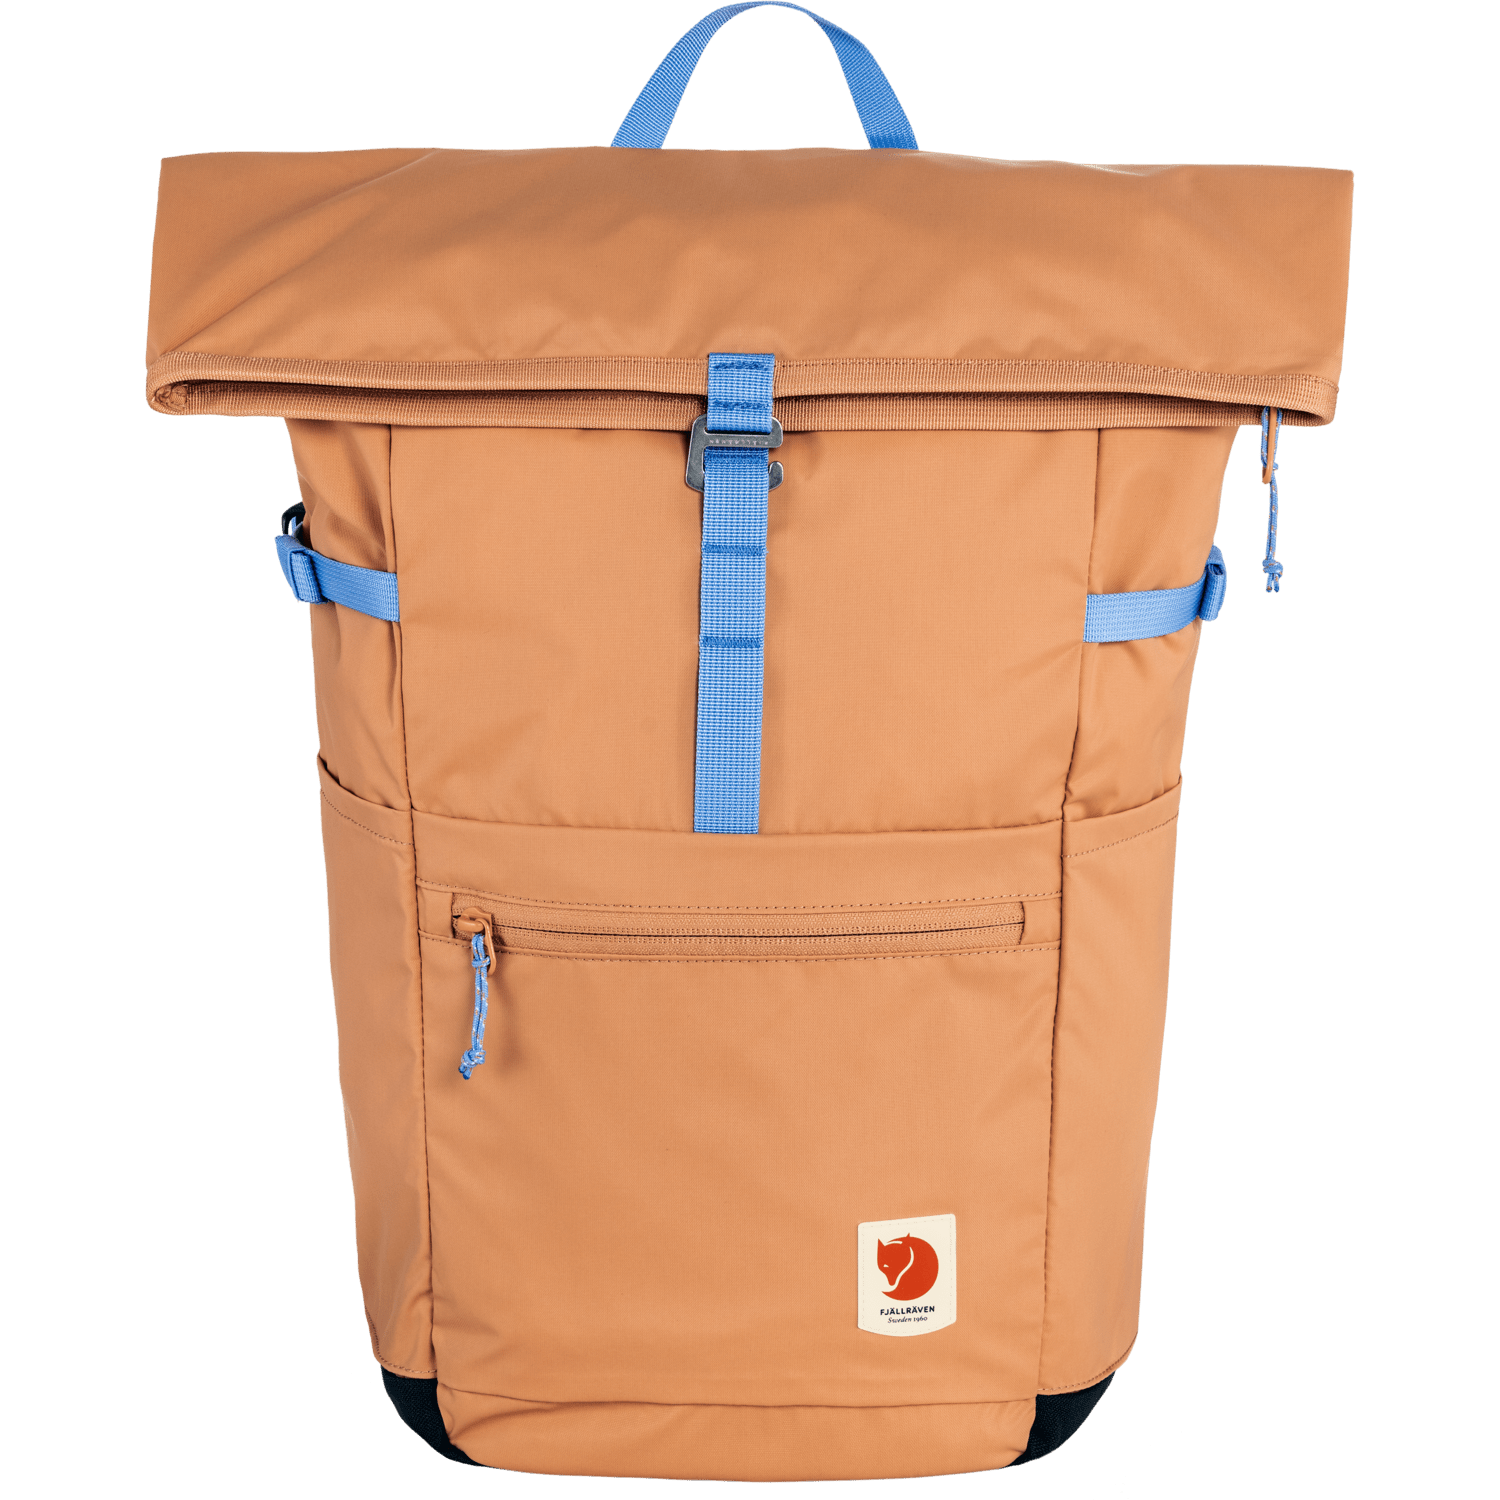 Fjällräven High Coast Foldsack 24l - Recycled nylon Peach Sand Bags